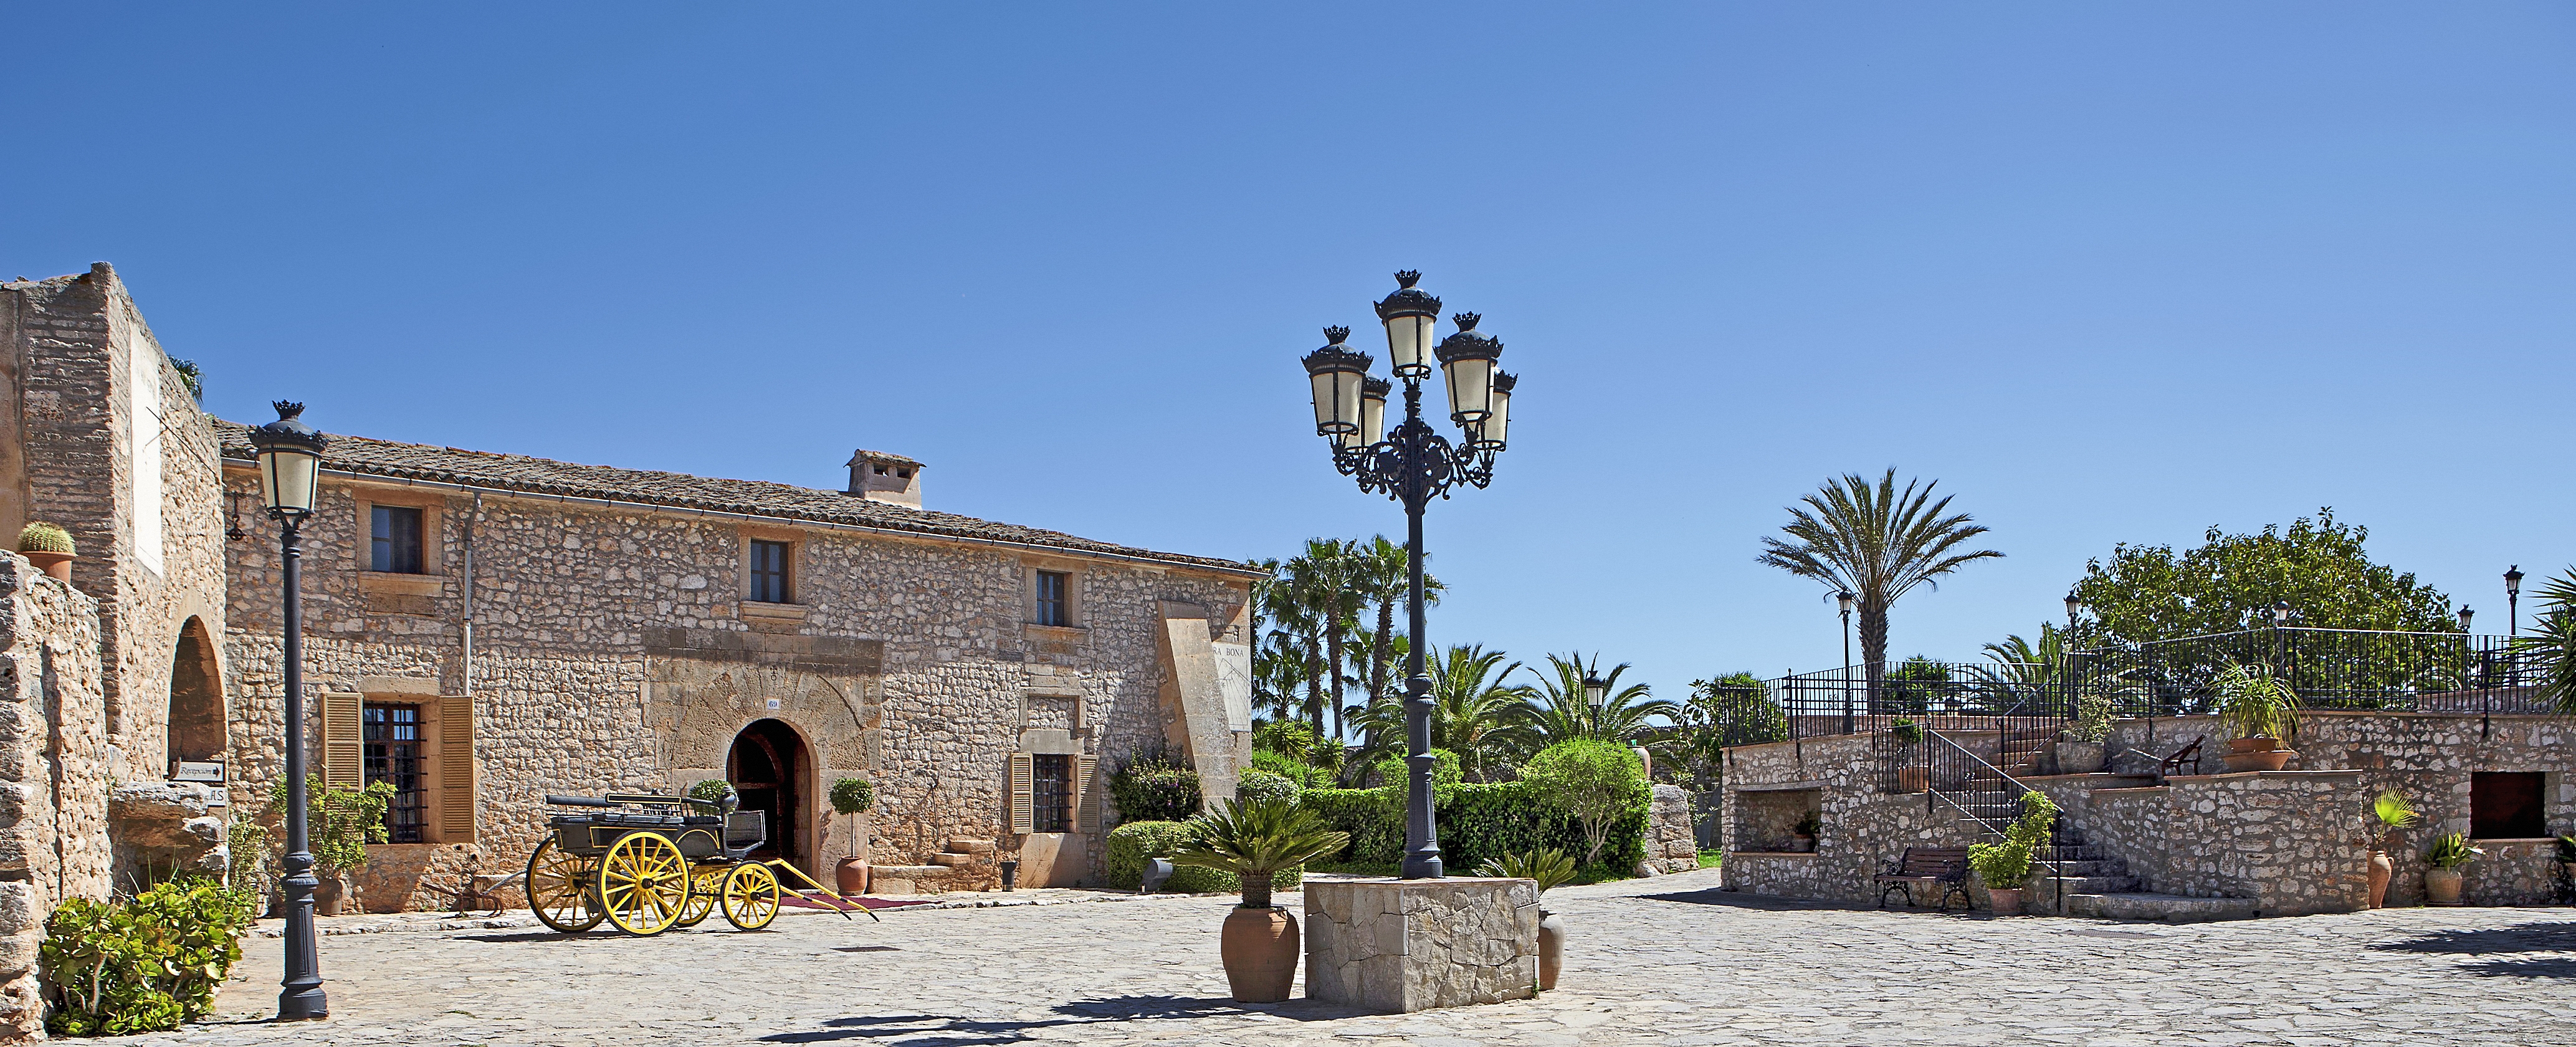 Landestypisches Flair verspricht die authentisch mallorquinische Finca aus dem 13. Jahrhundert: Das neue Viverde Hotel Sa Bassa Rotja auf Mallorca